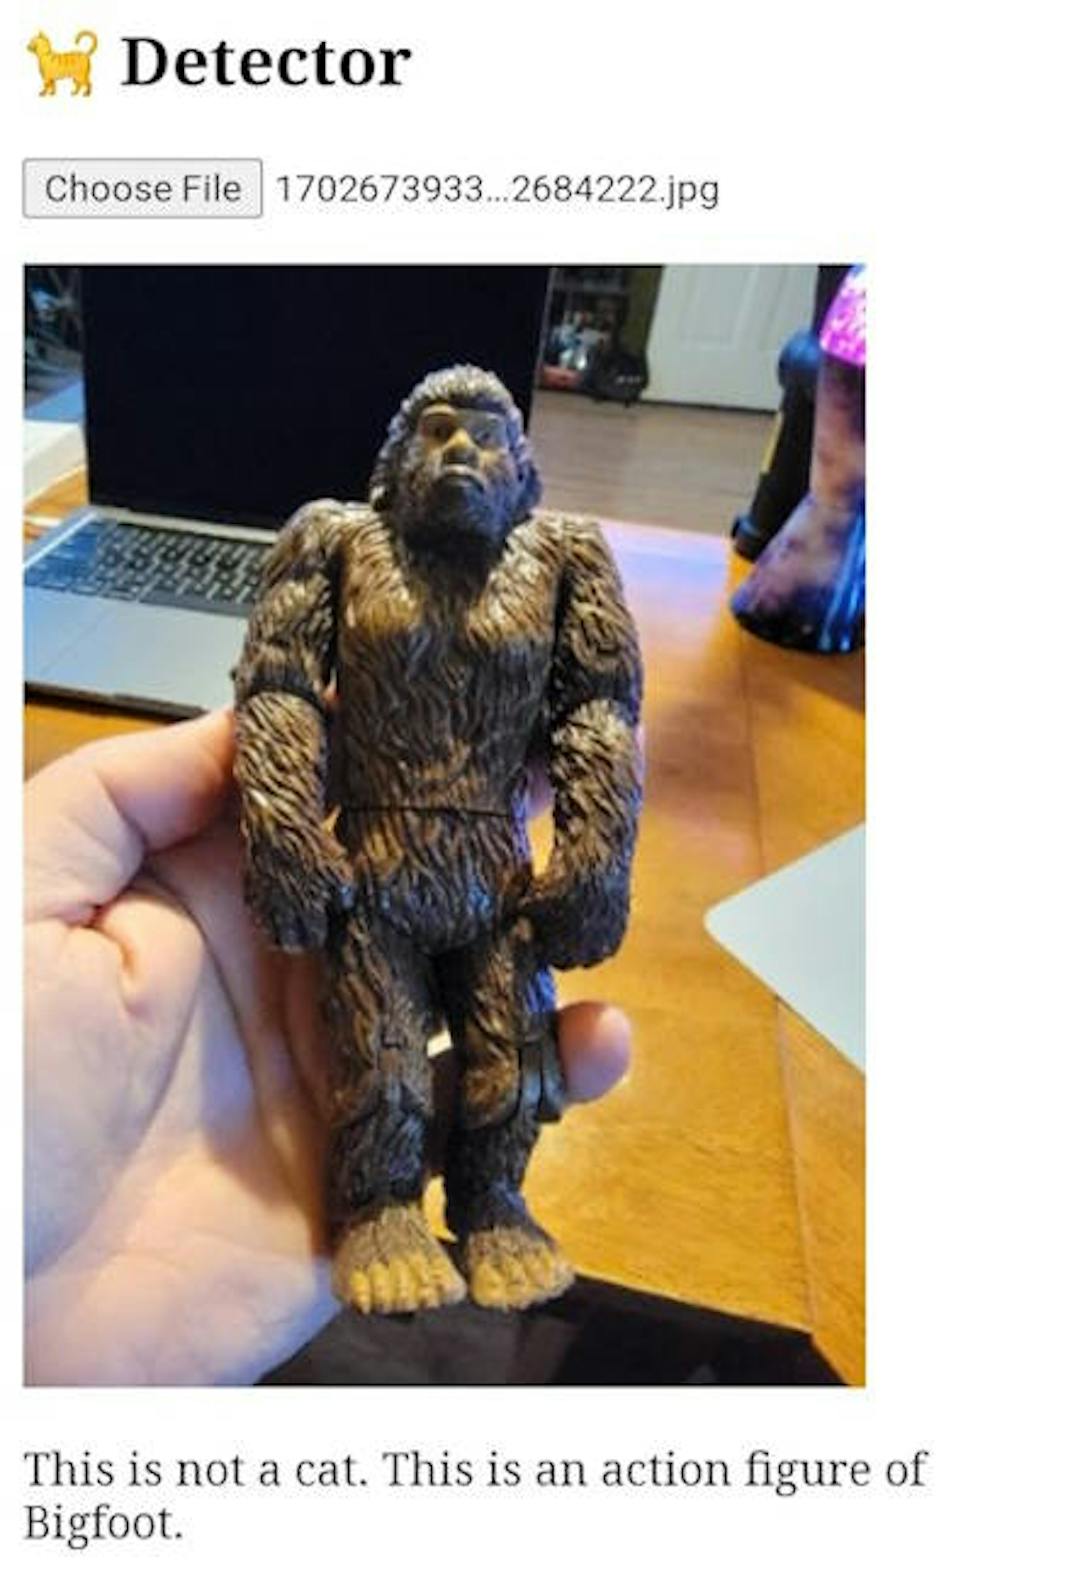 Una imagen de una figura de acción de Bigfoot.